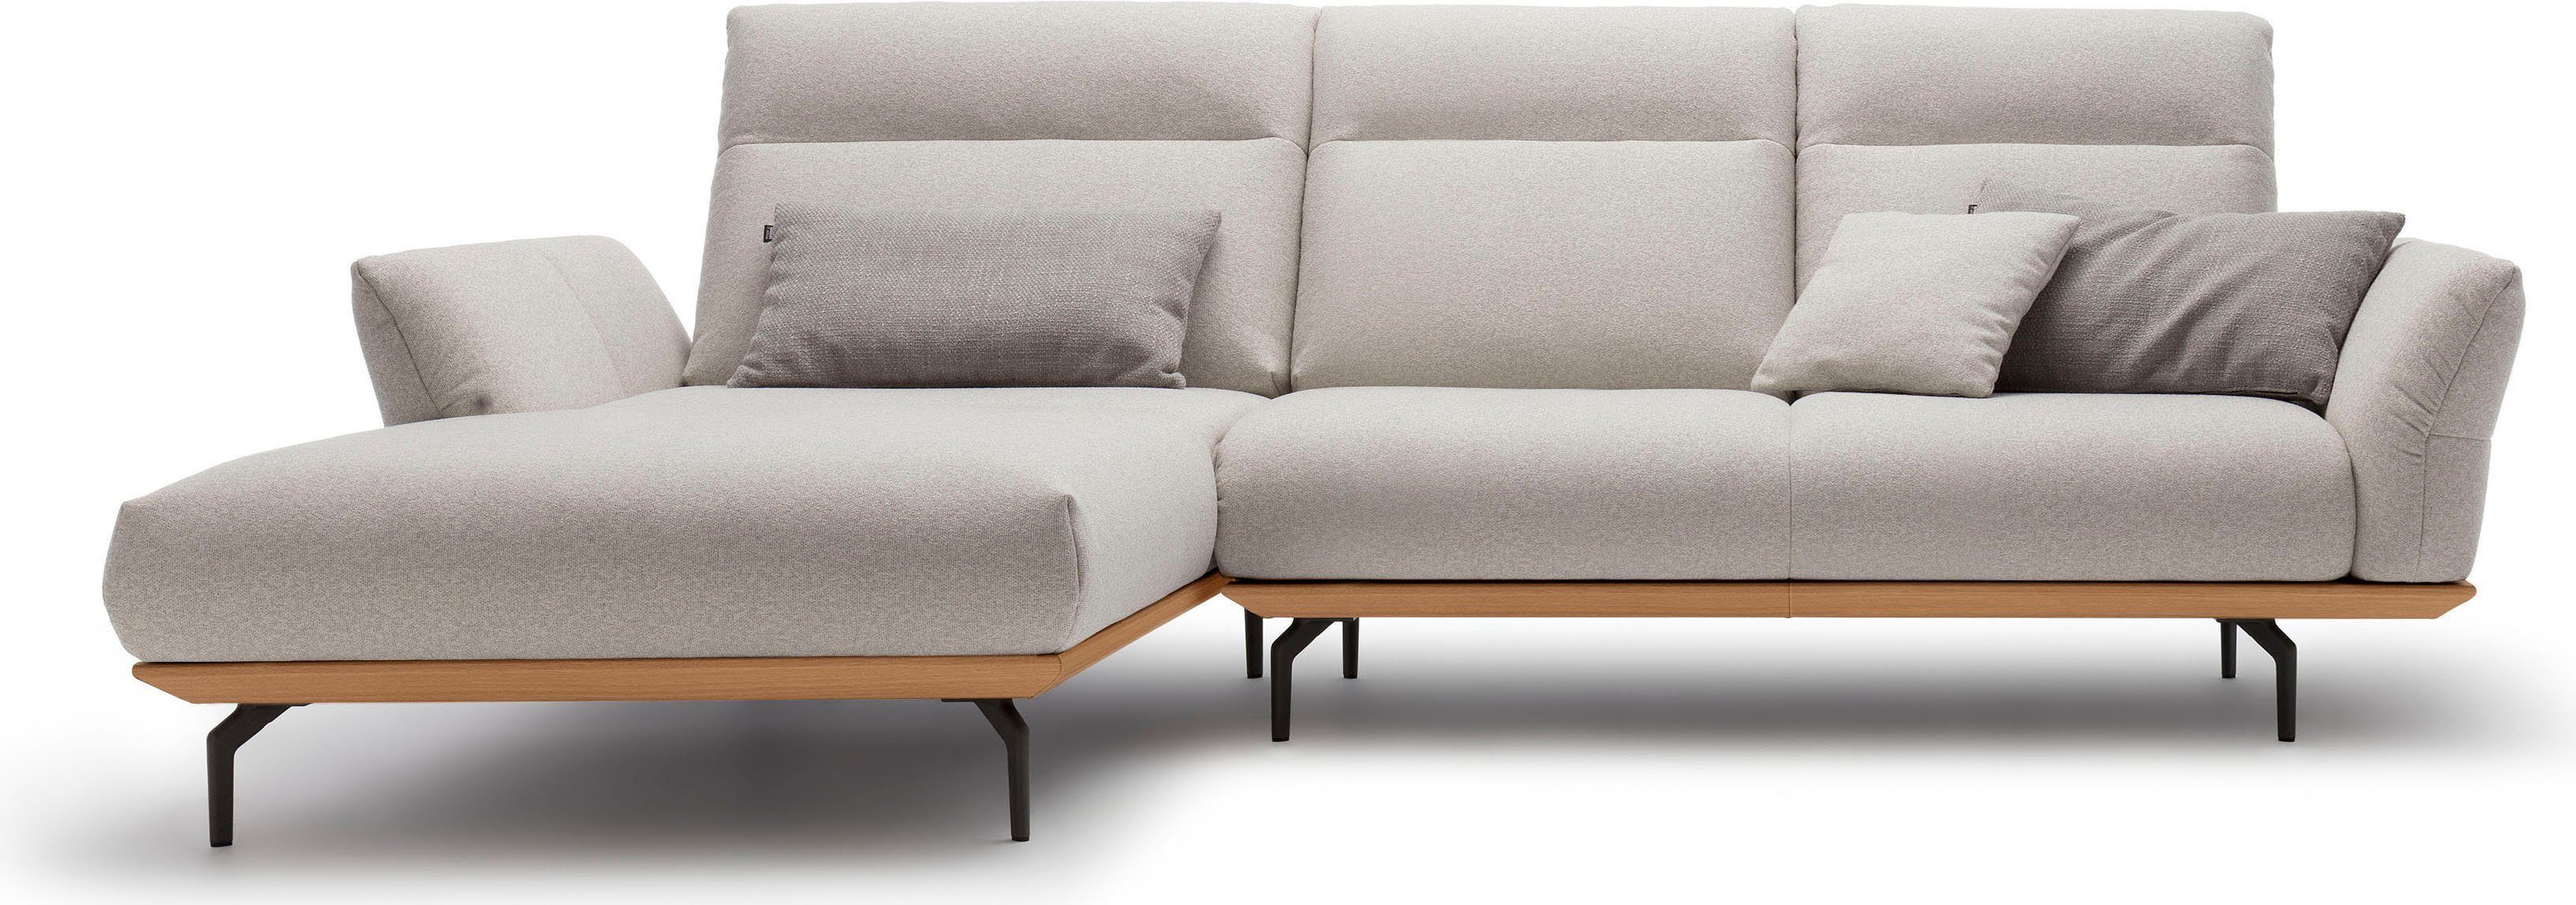 huelsta sofa hoekbank hs.460 sokkel in eiken, gegoten aluminium poten in umbra grijs, breedte 298 cm grijs